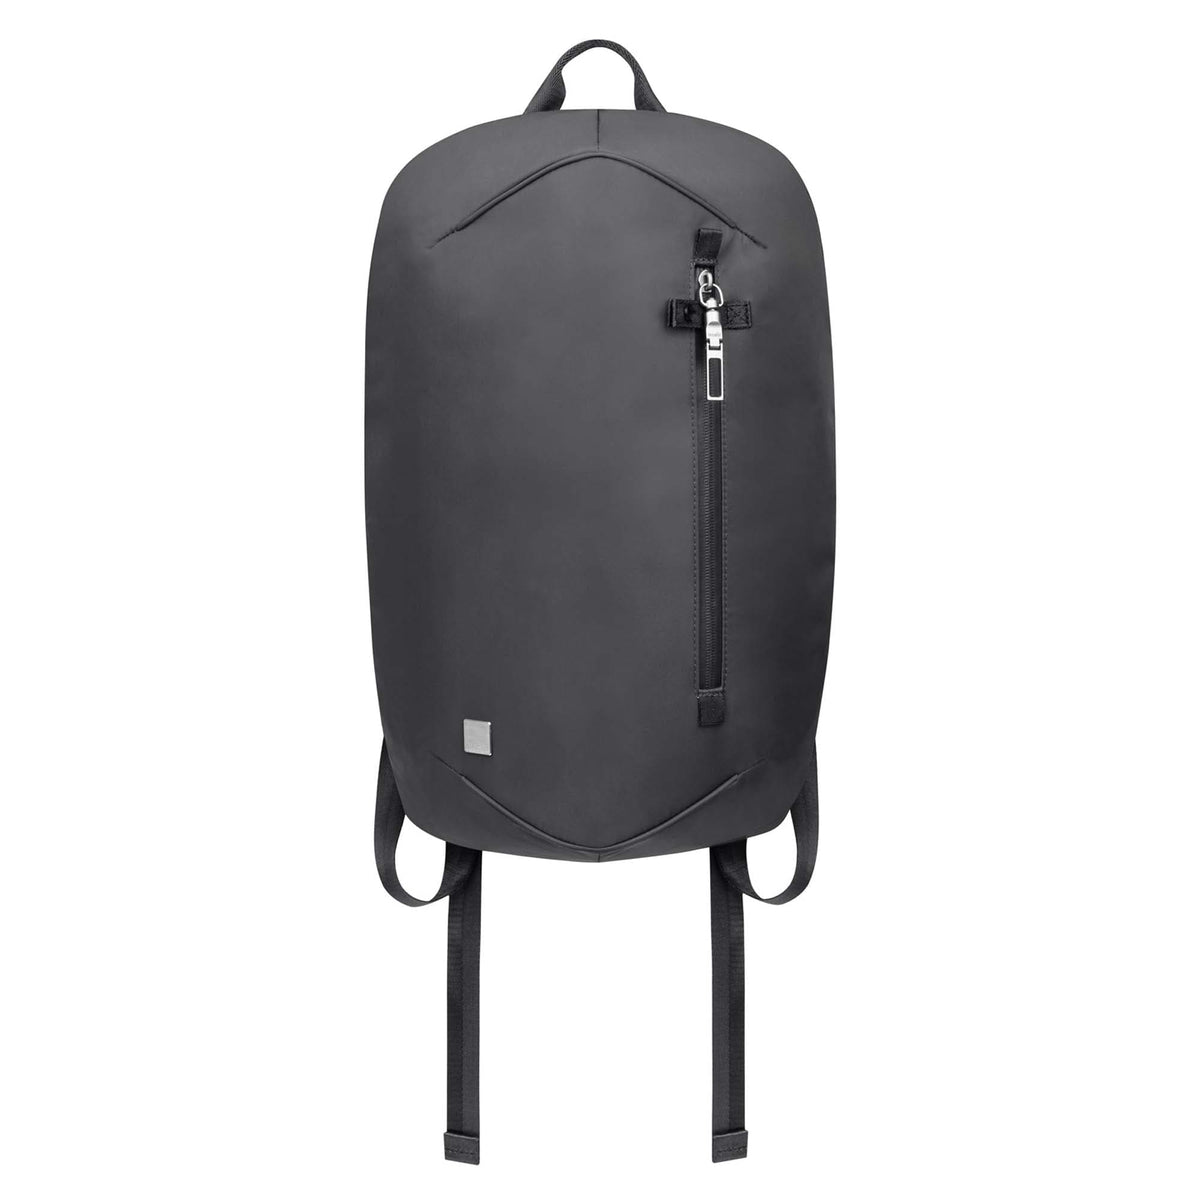 Moshi Hexa Lightweight Backpack